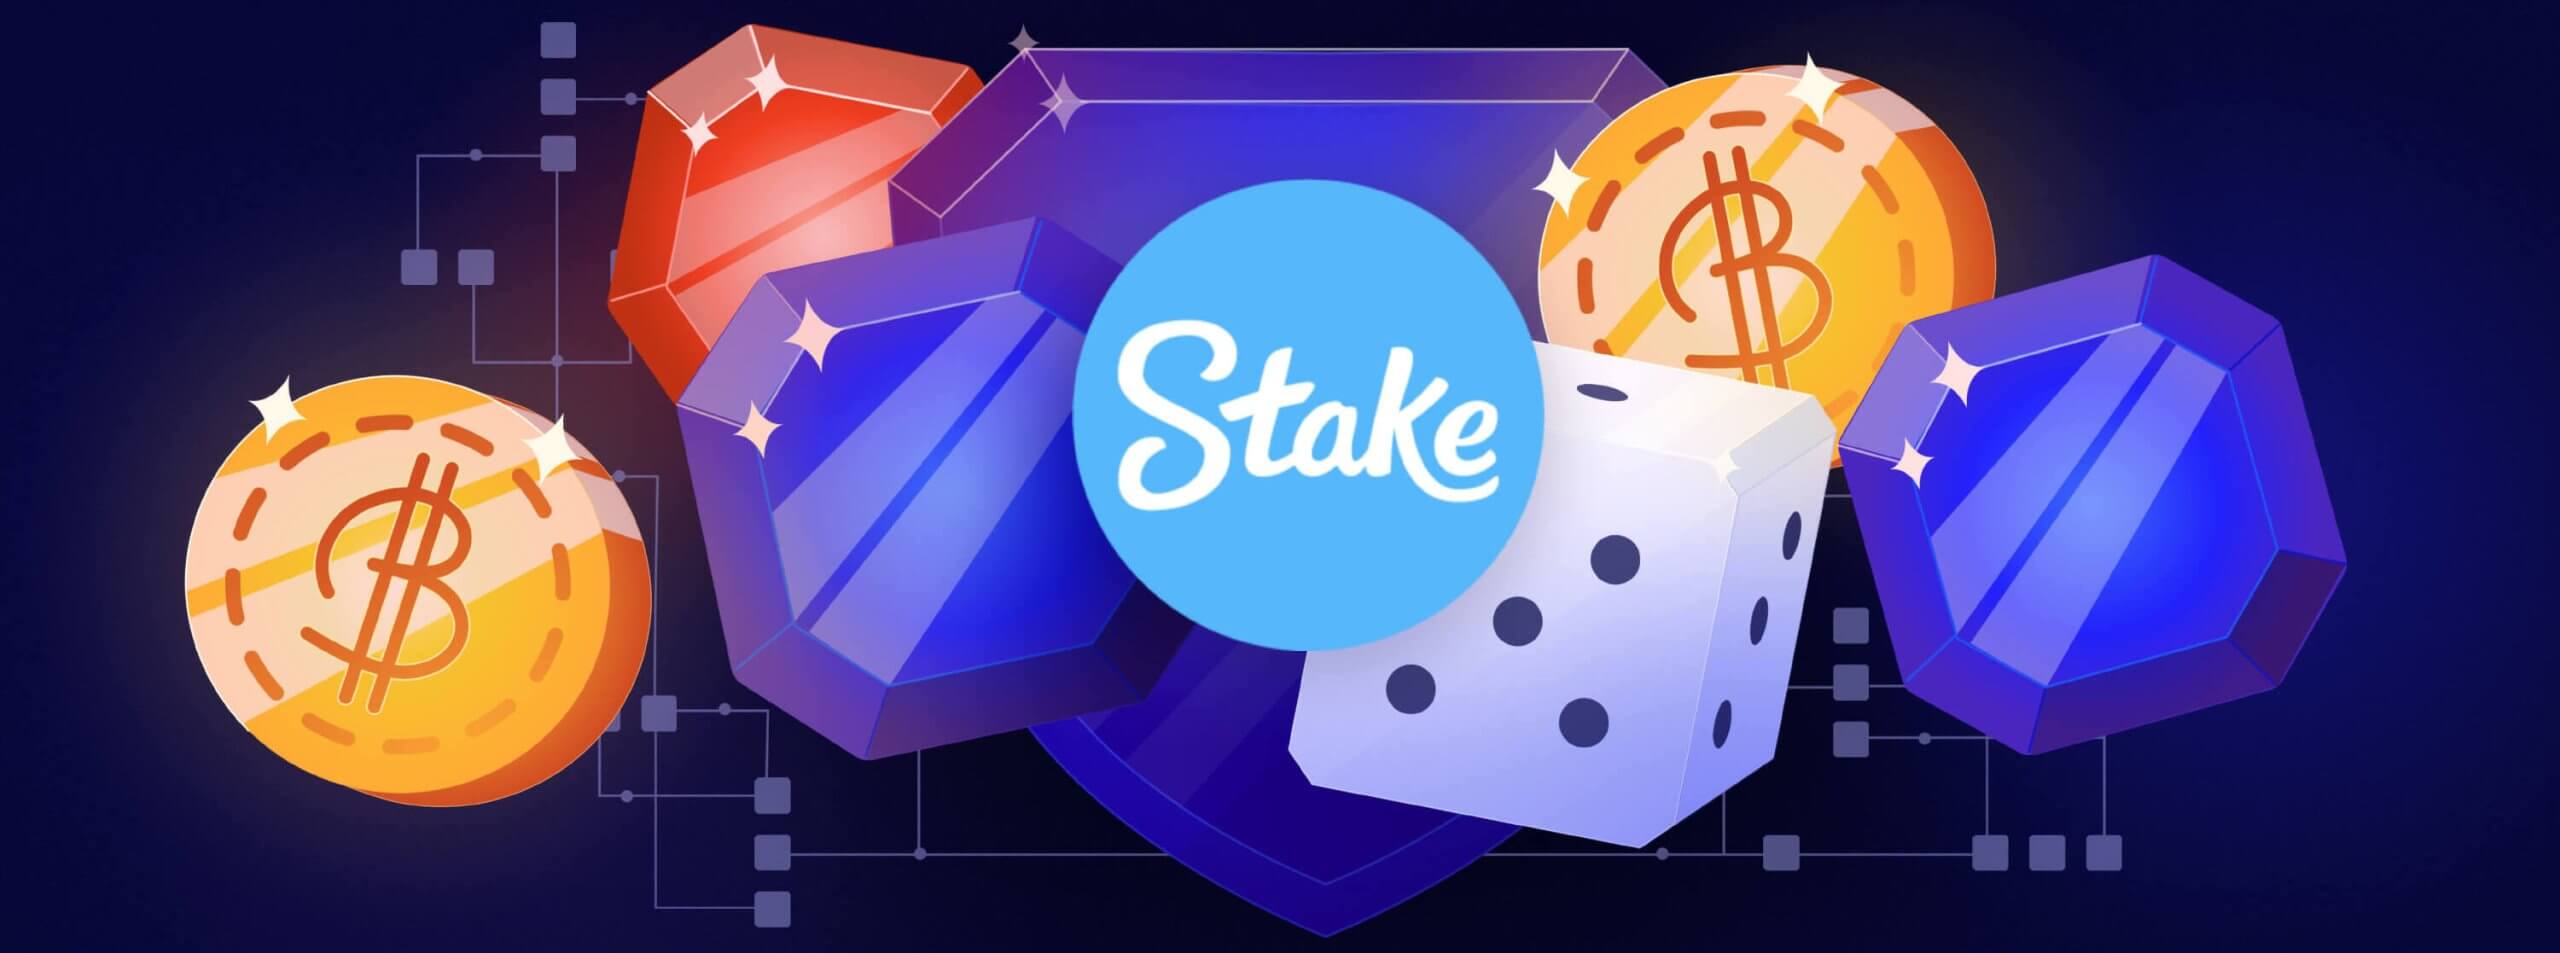 Stake.com Drake CS